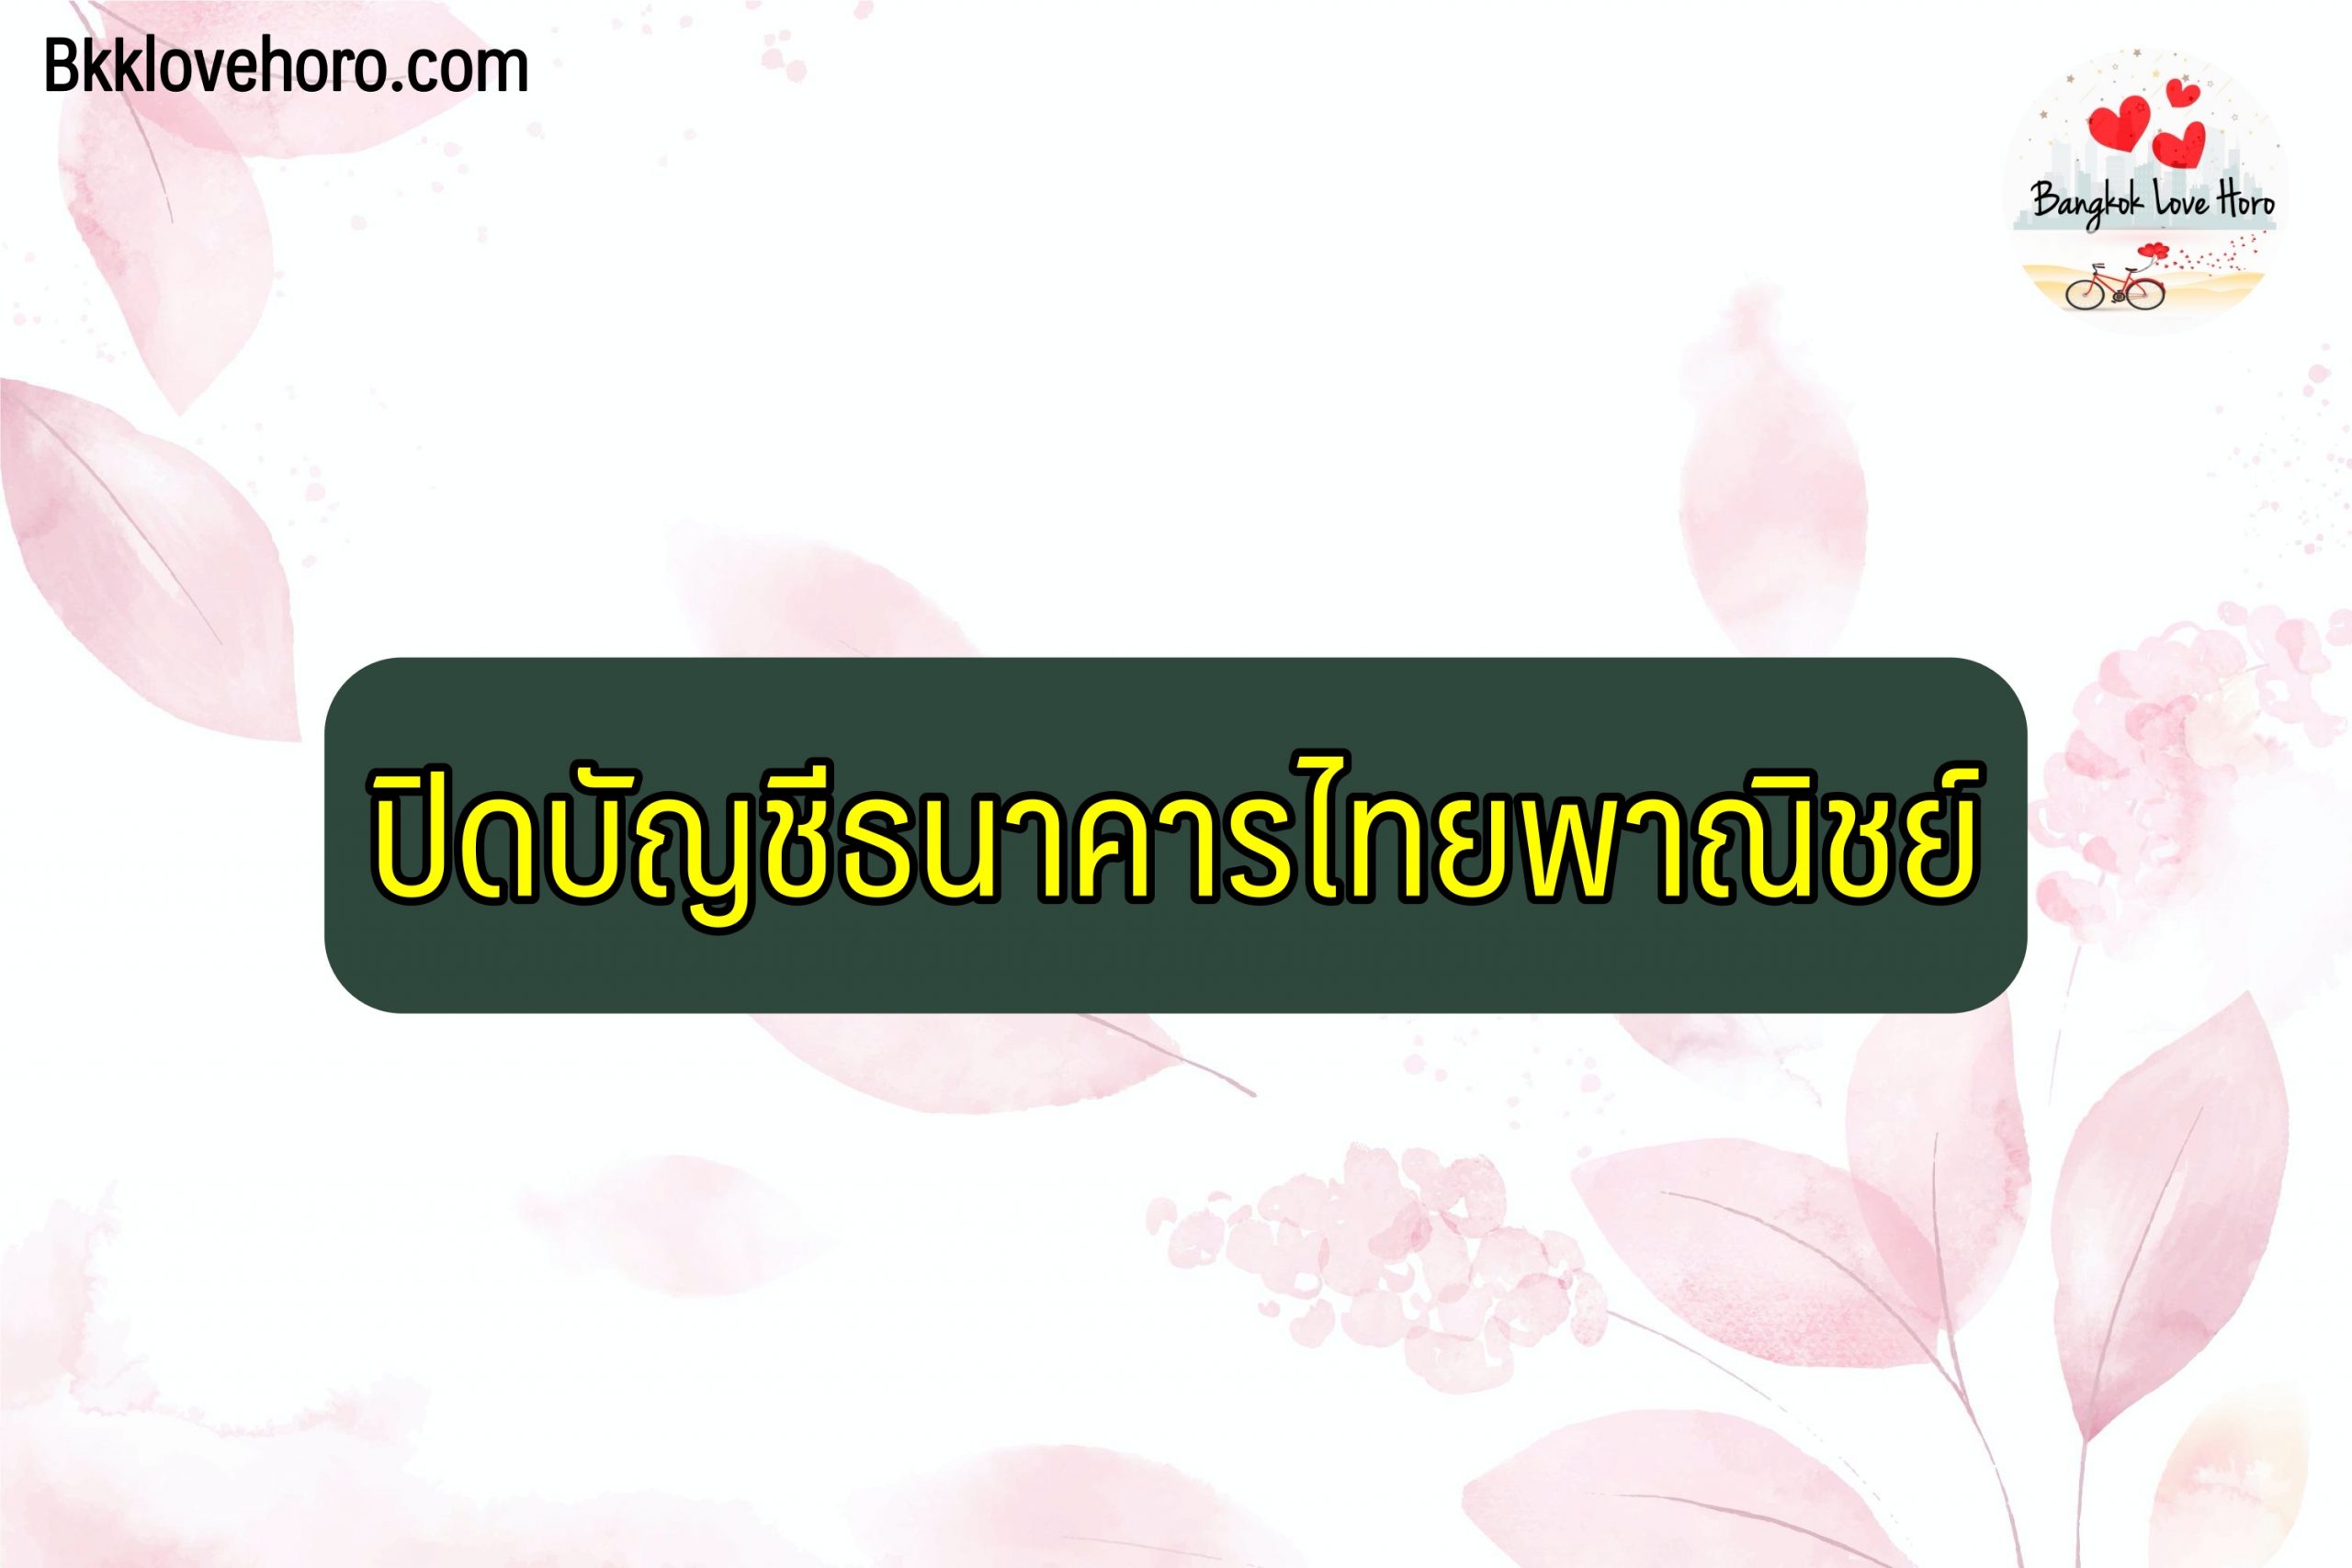 ปิดบัญชีธนาคารไทยพาณิชย์ 2564 ออนไลน์ ไม่มีสมุด ต่างสาขา ใช้อะไรบ้าง